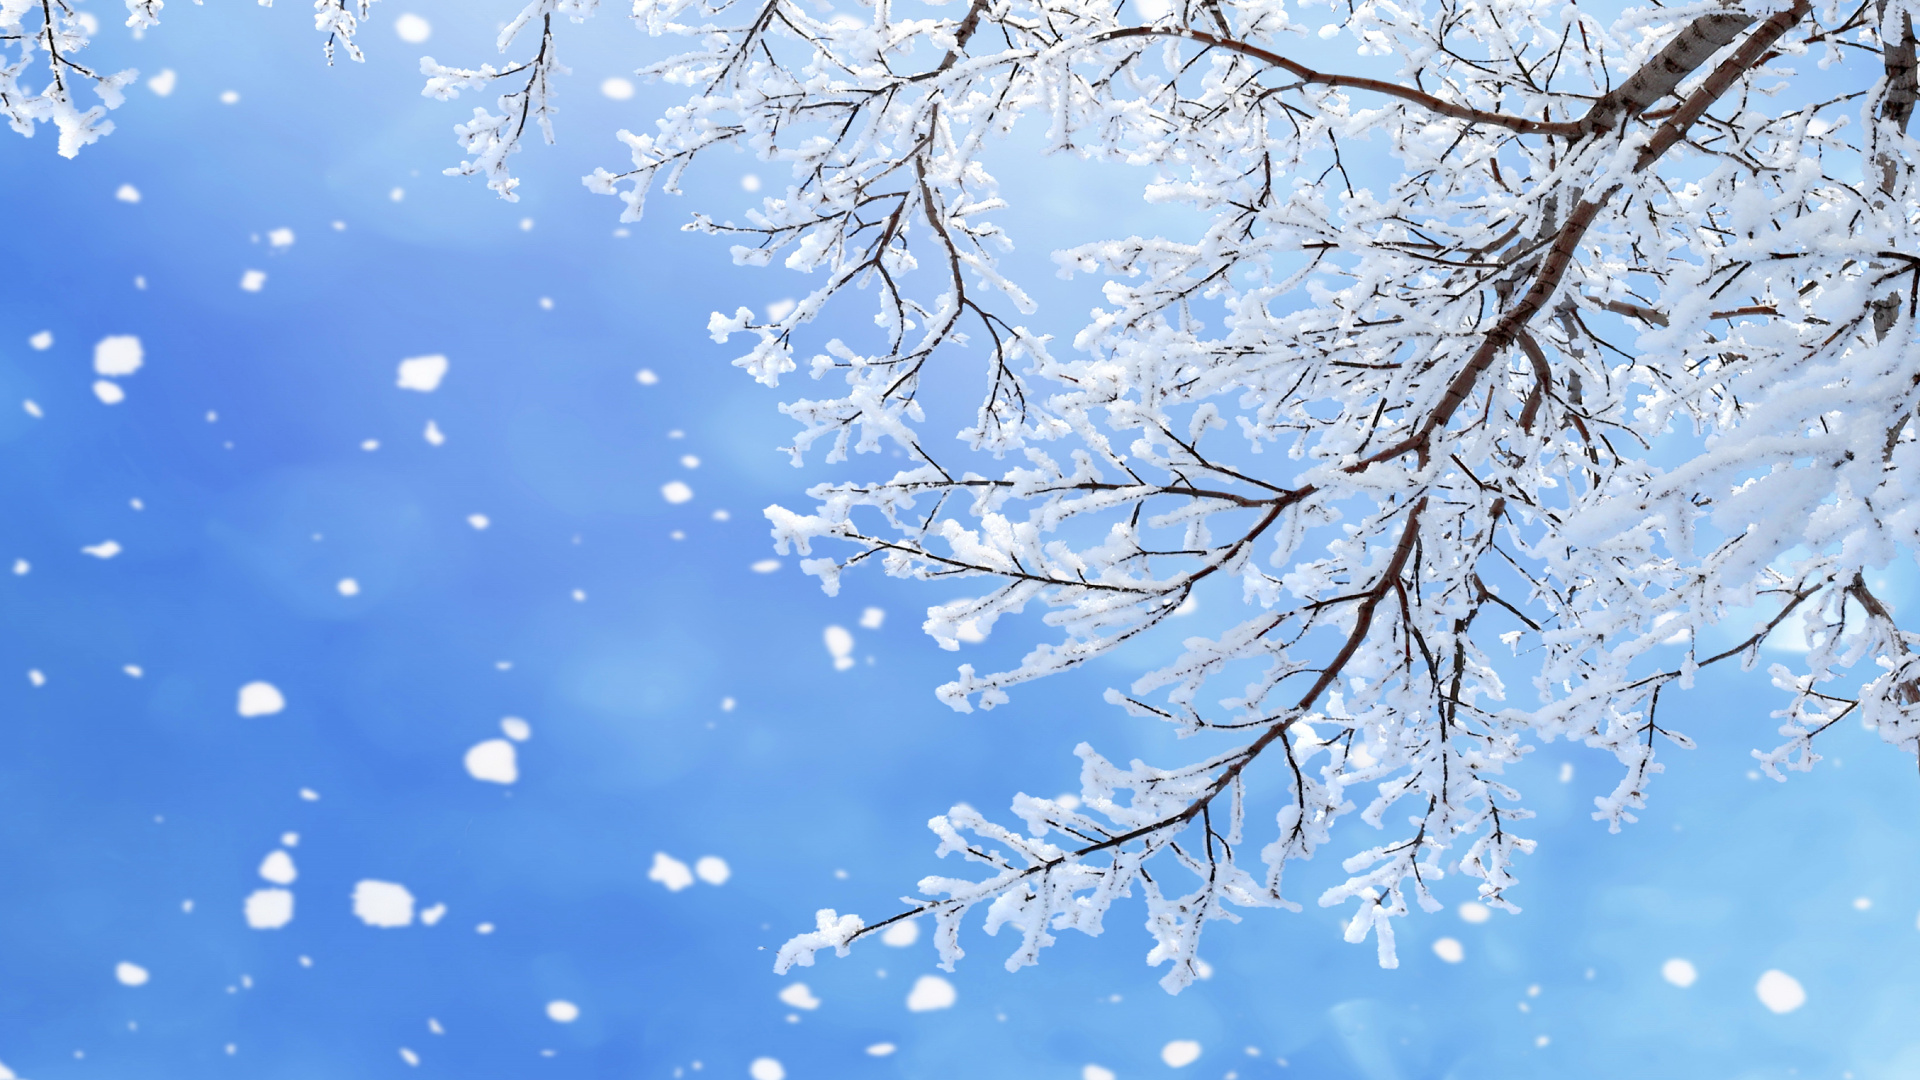 冬天, 树枝, 雪花, 季节, 冻结 壁纸 1920x1080 允许